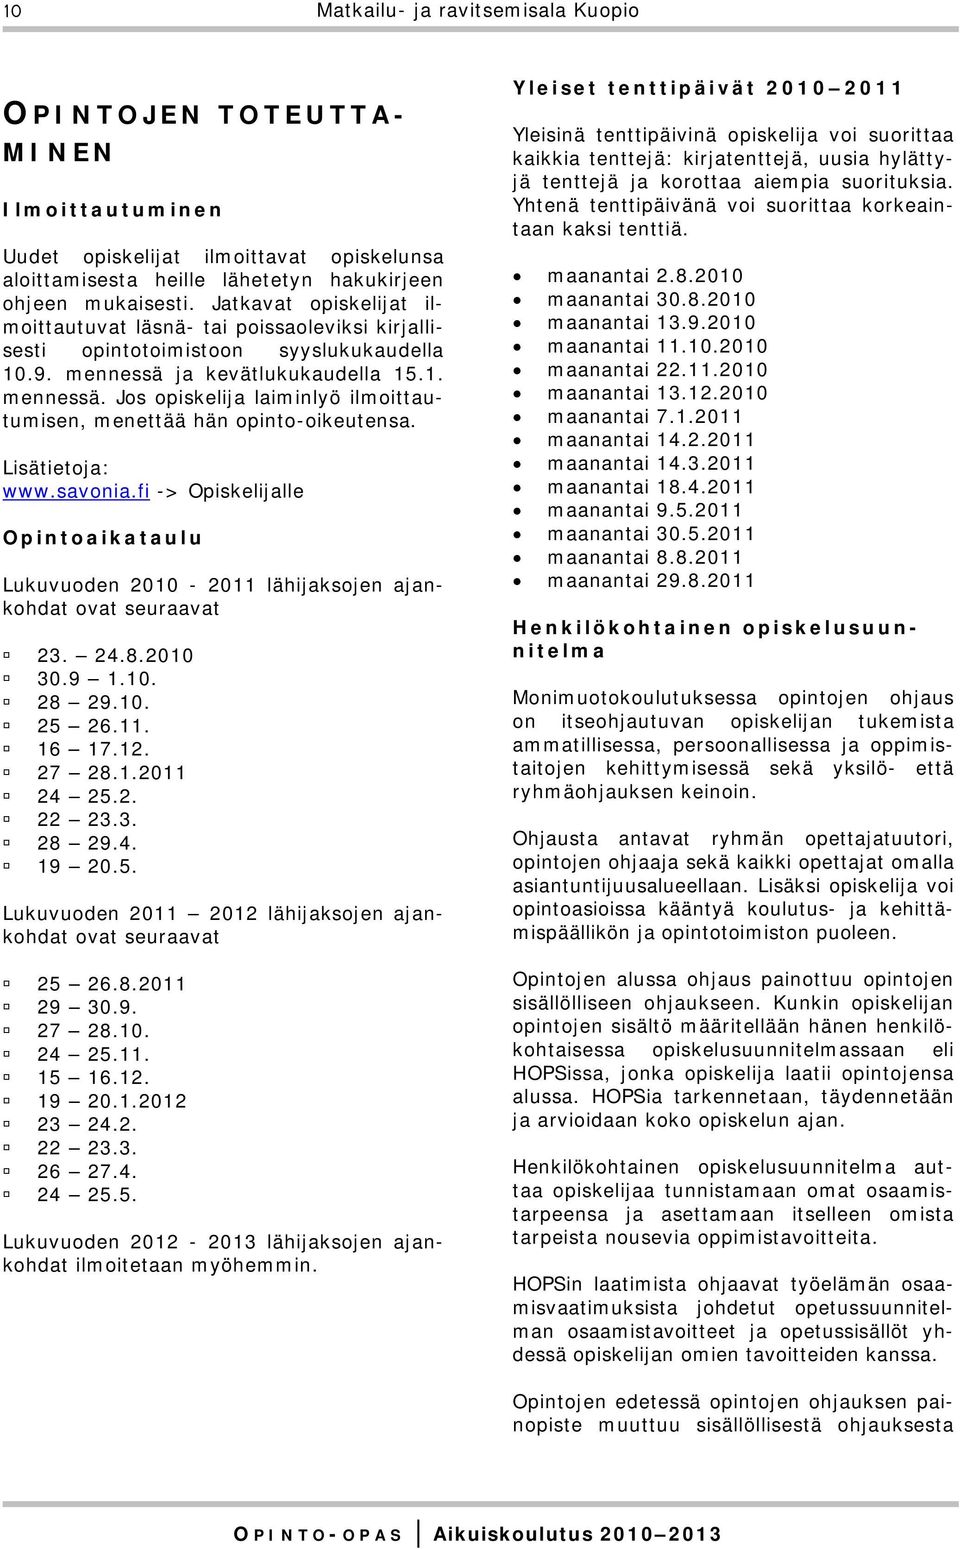 Lisätietoja: www.savonia.fi -> Opiskelijalle Opintoaikataulu Lukuvuoden 2010-2011 lähijaksojen ajankohdat ovat seuraavat 23. 24.8.2010 30.9 1.10. 28 29.10. 25 26.11. 16 17.12. 27 28.1.2011 24 25.2. 22 23.